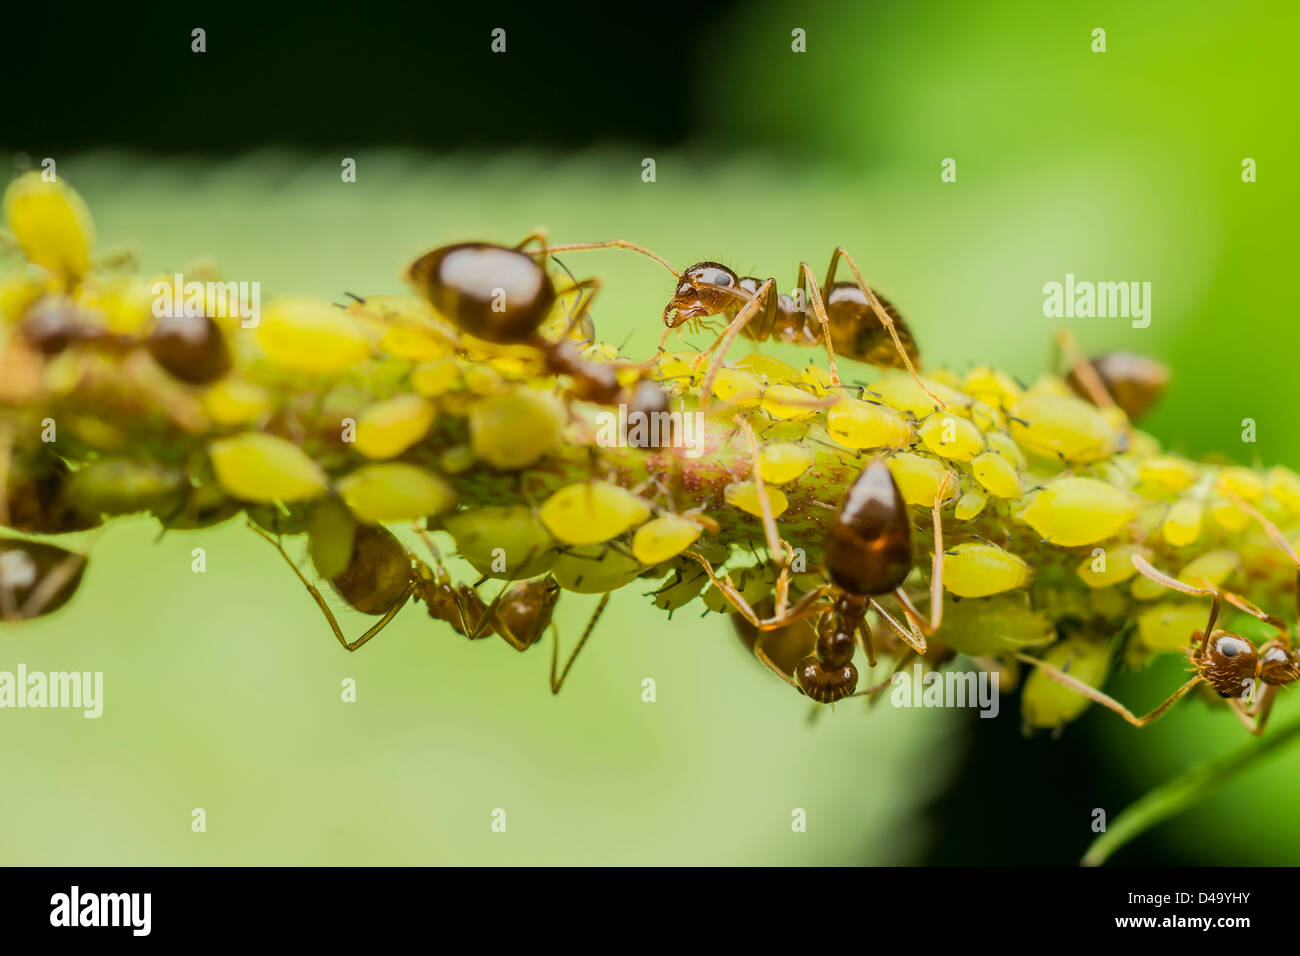 Ameisen Essen Blattläuse Stockfoto